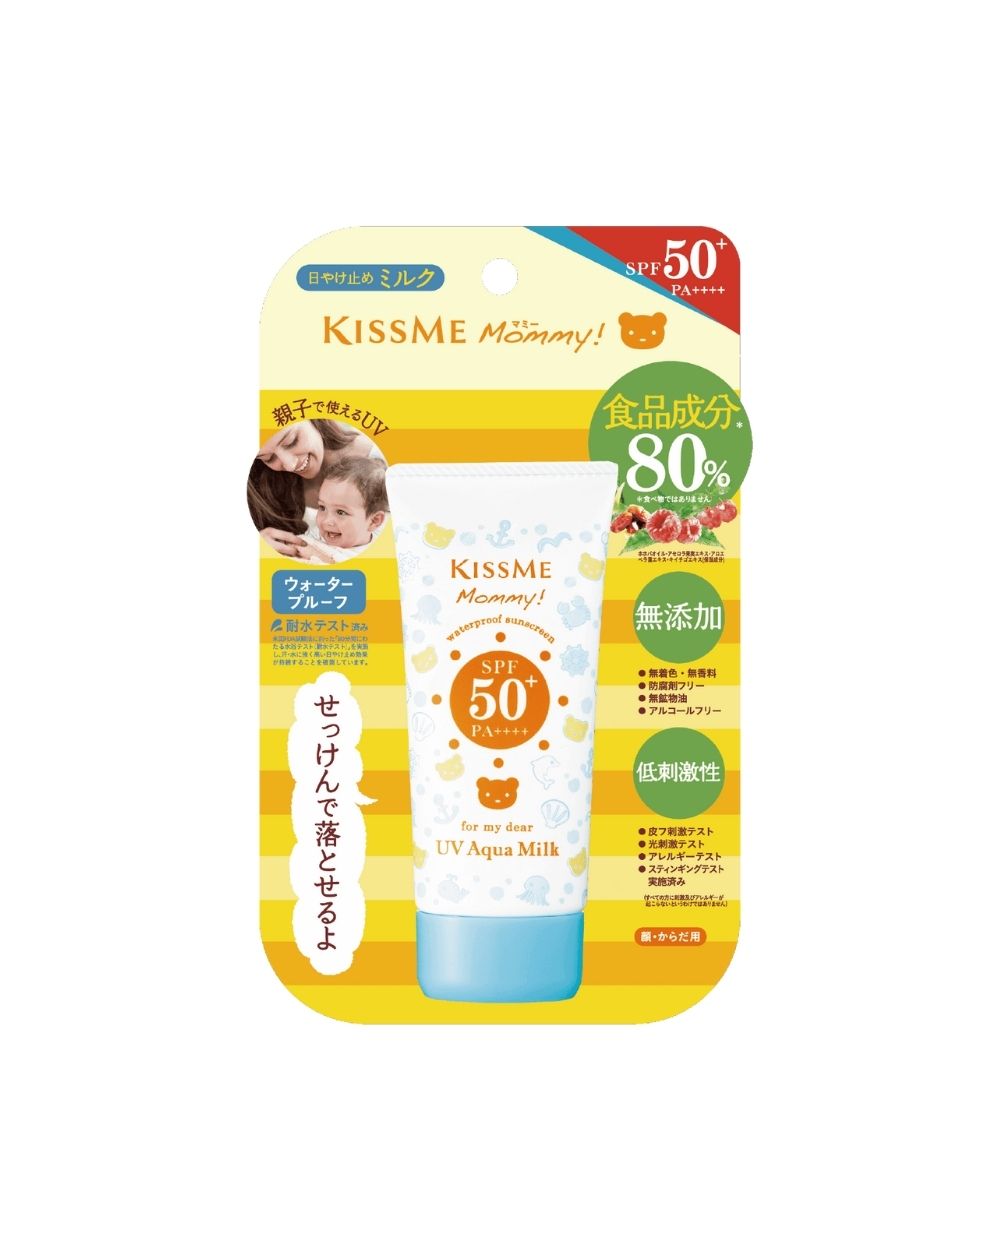 Isehan - Kiss Me Mommy UV Aqua Milk SPF50+ PA++++